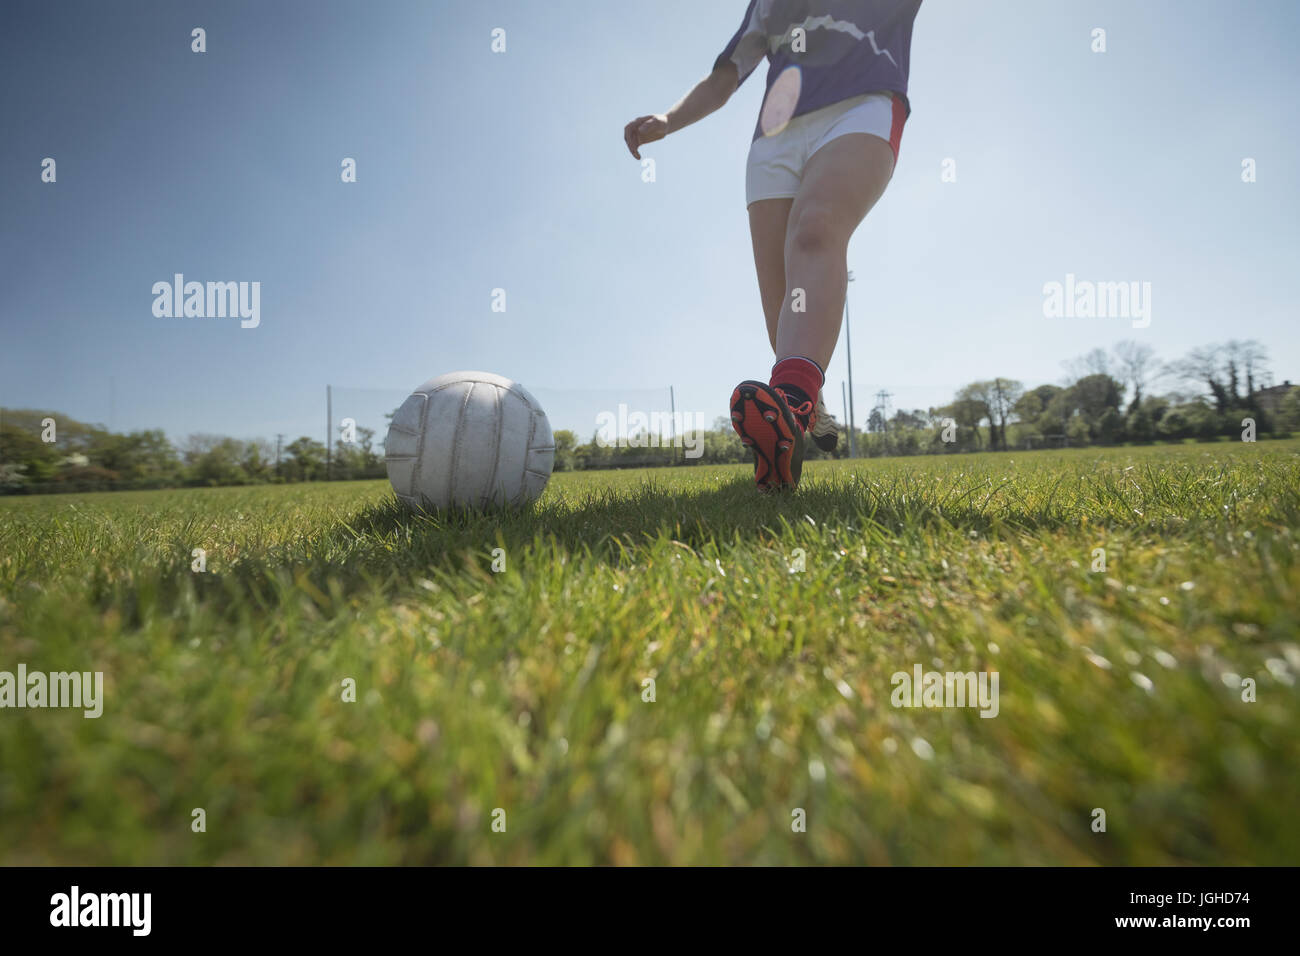 La section basse de femme jouant au football sur terrain contre ciel lors de journée ensoleillée Banque D'Images